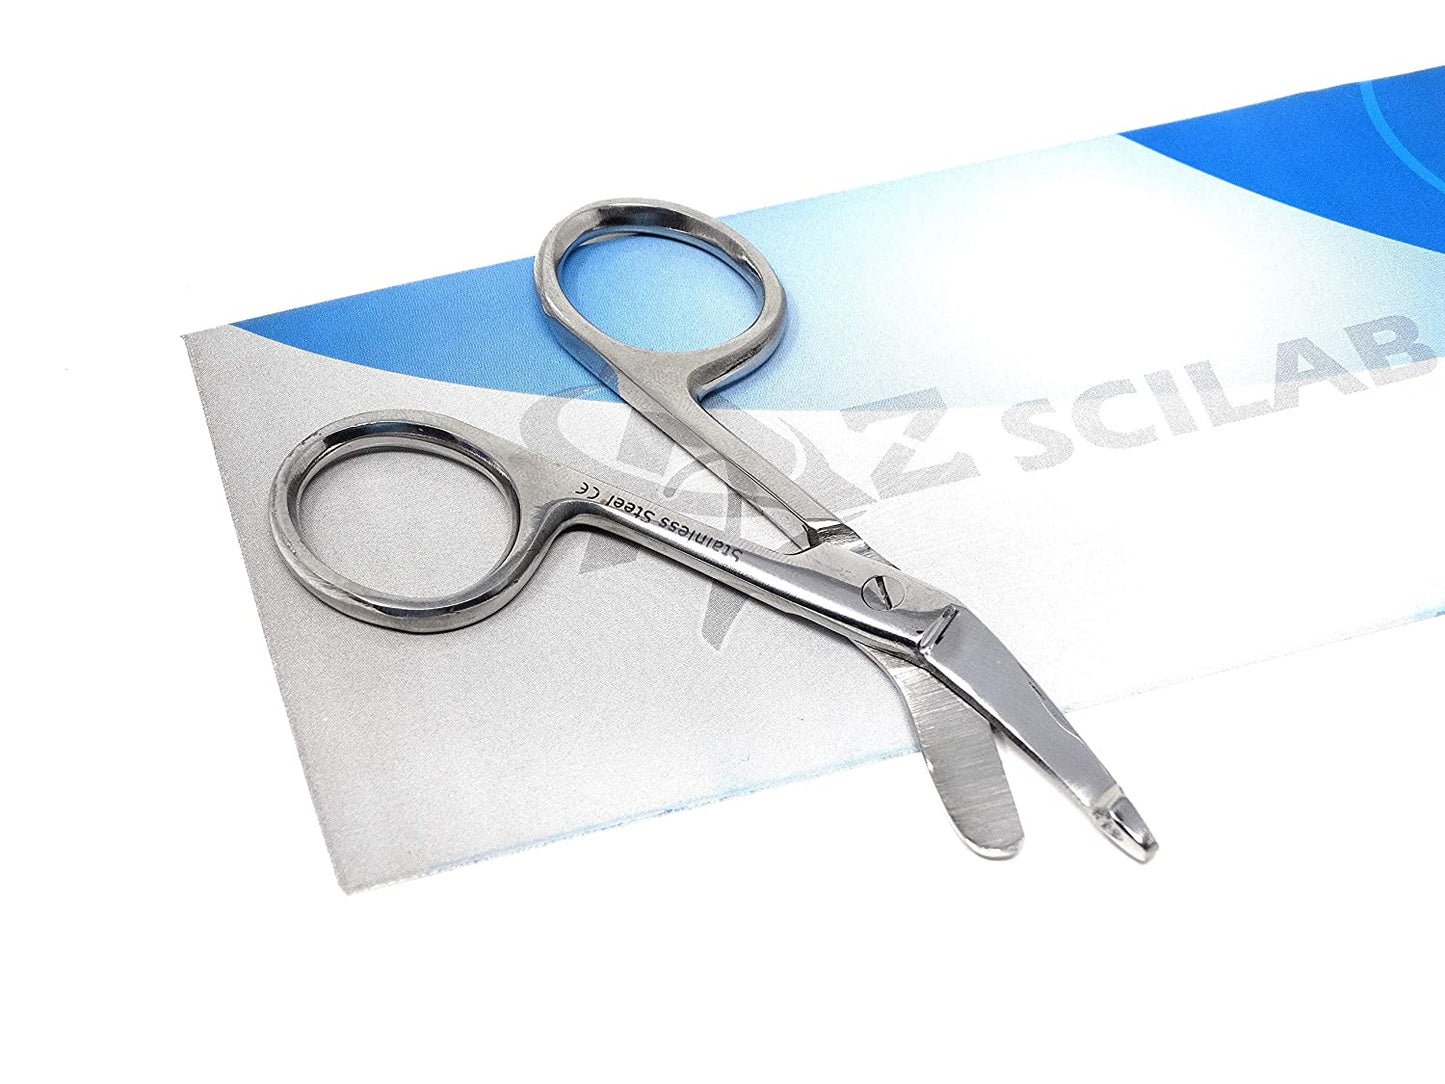 Lister Bandage Scissors 3.5" (8.9cm), Stainless Steel